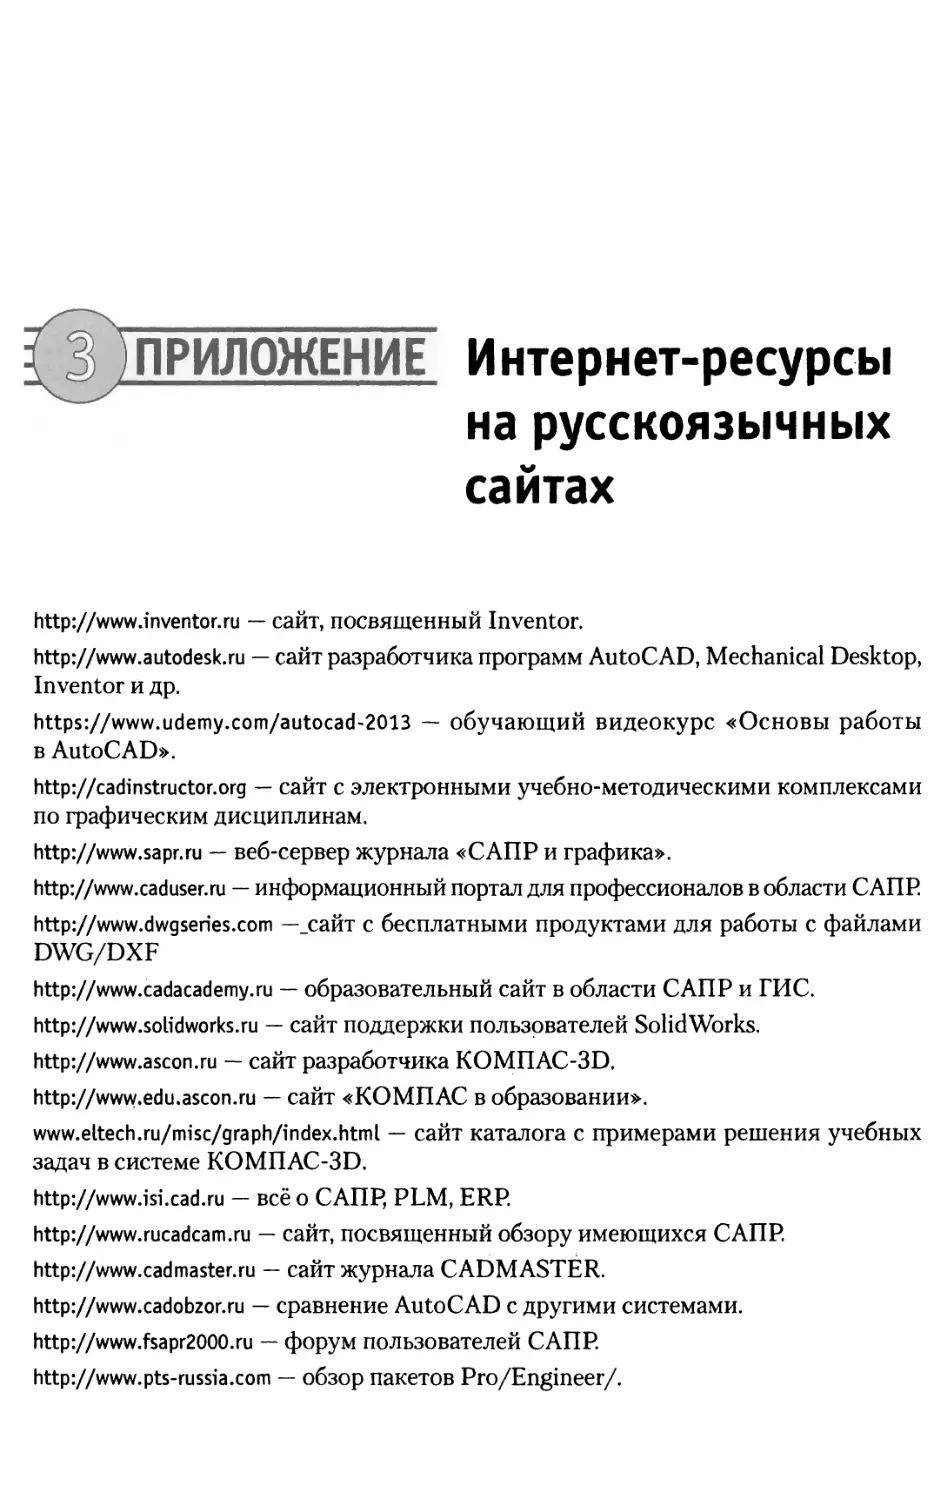 Приложение 3. Интернет-ресурсы на русскоязычных сайтах